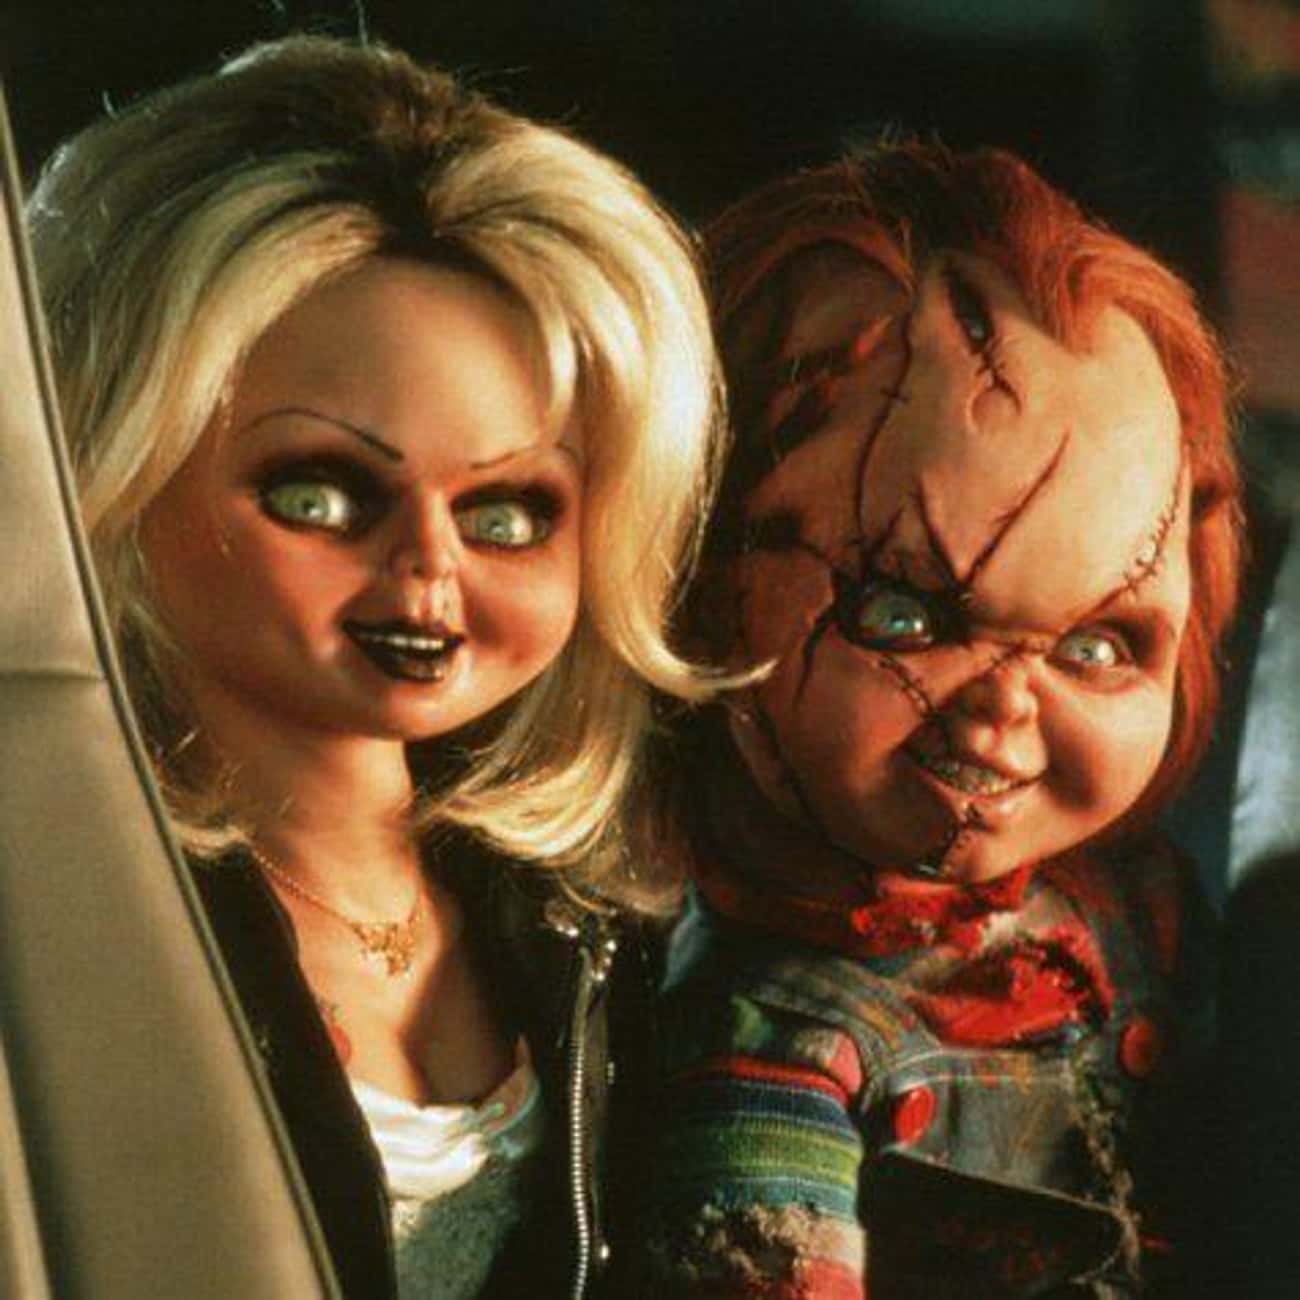 Chucky and Tiffany - 'Bride of Chucky'